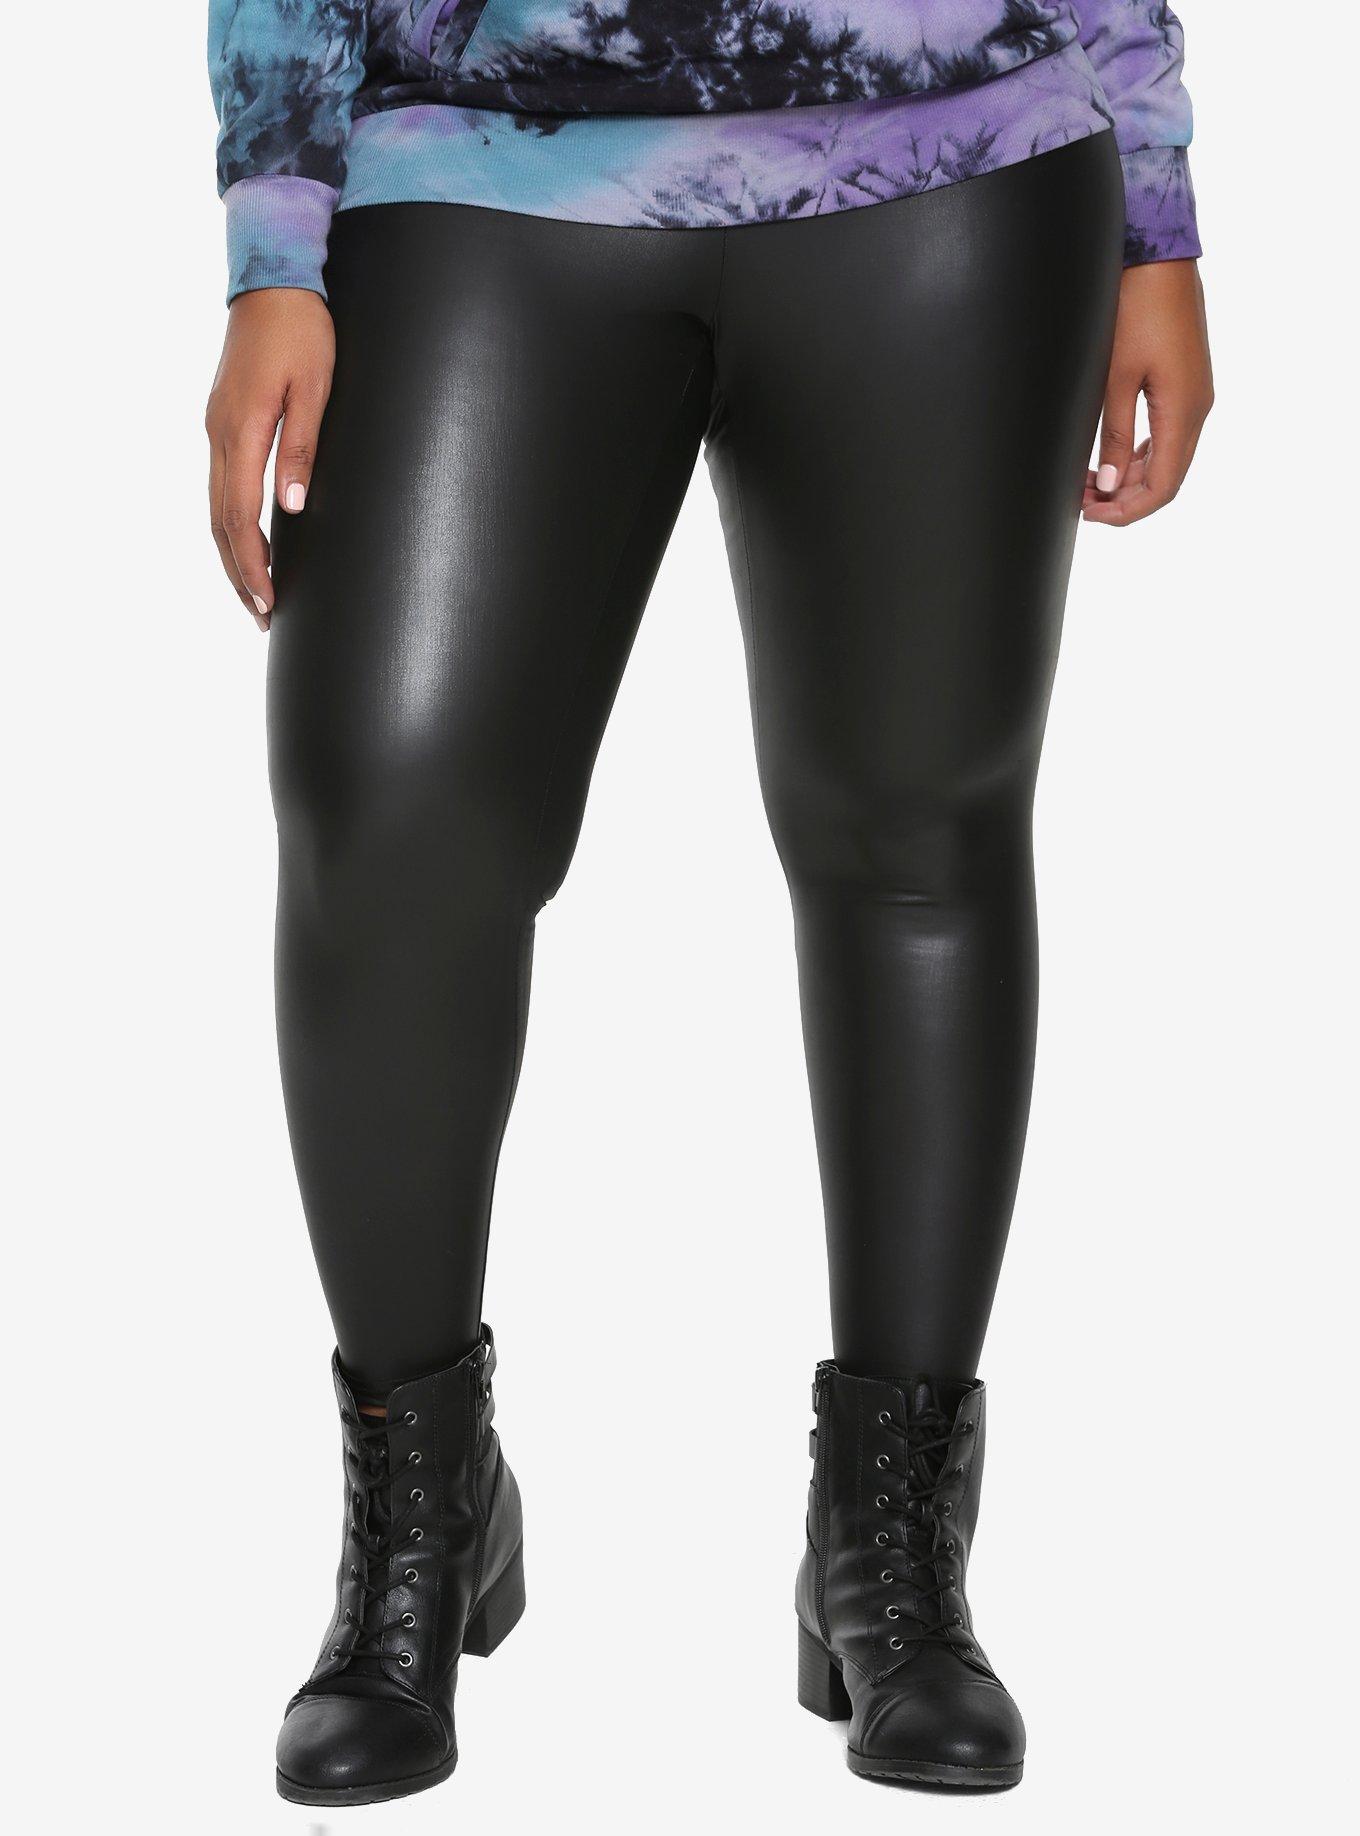 Black Faux Leather Leggings Plus Size